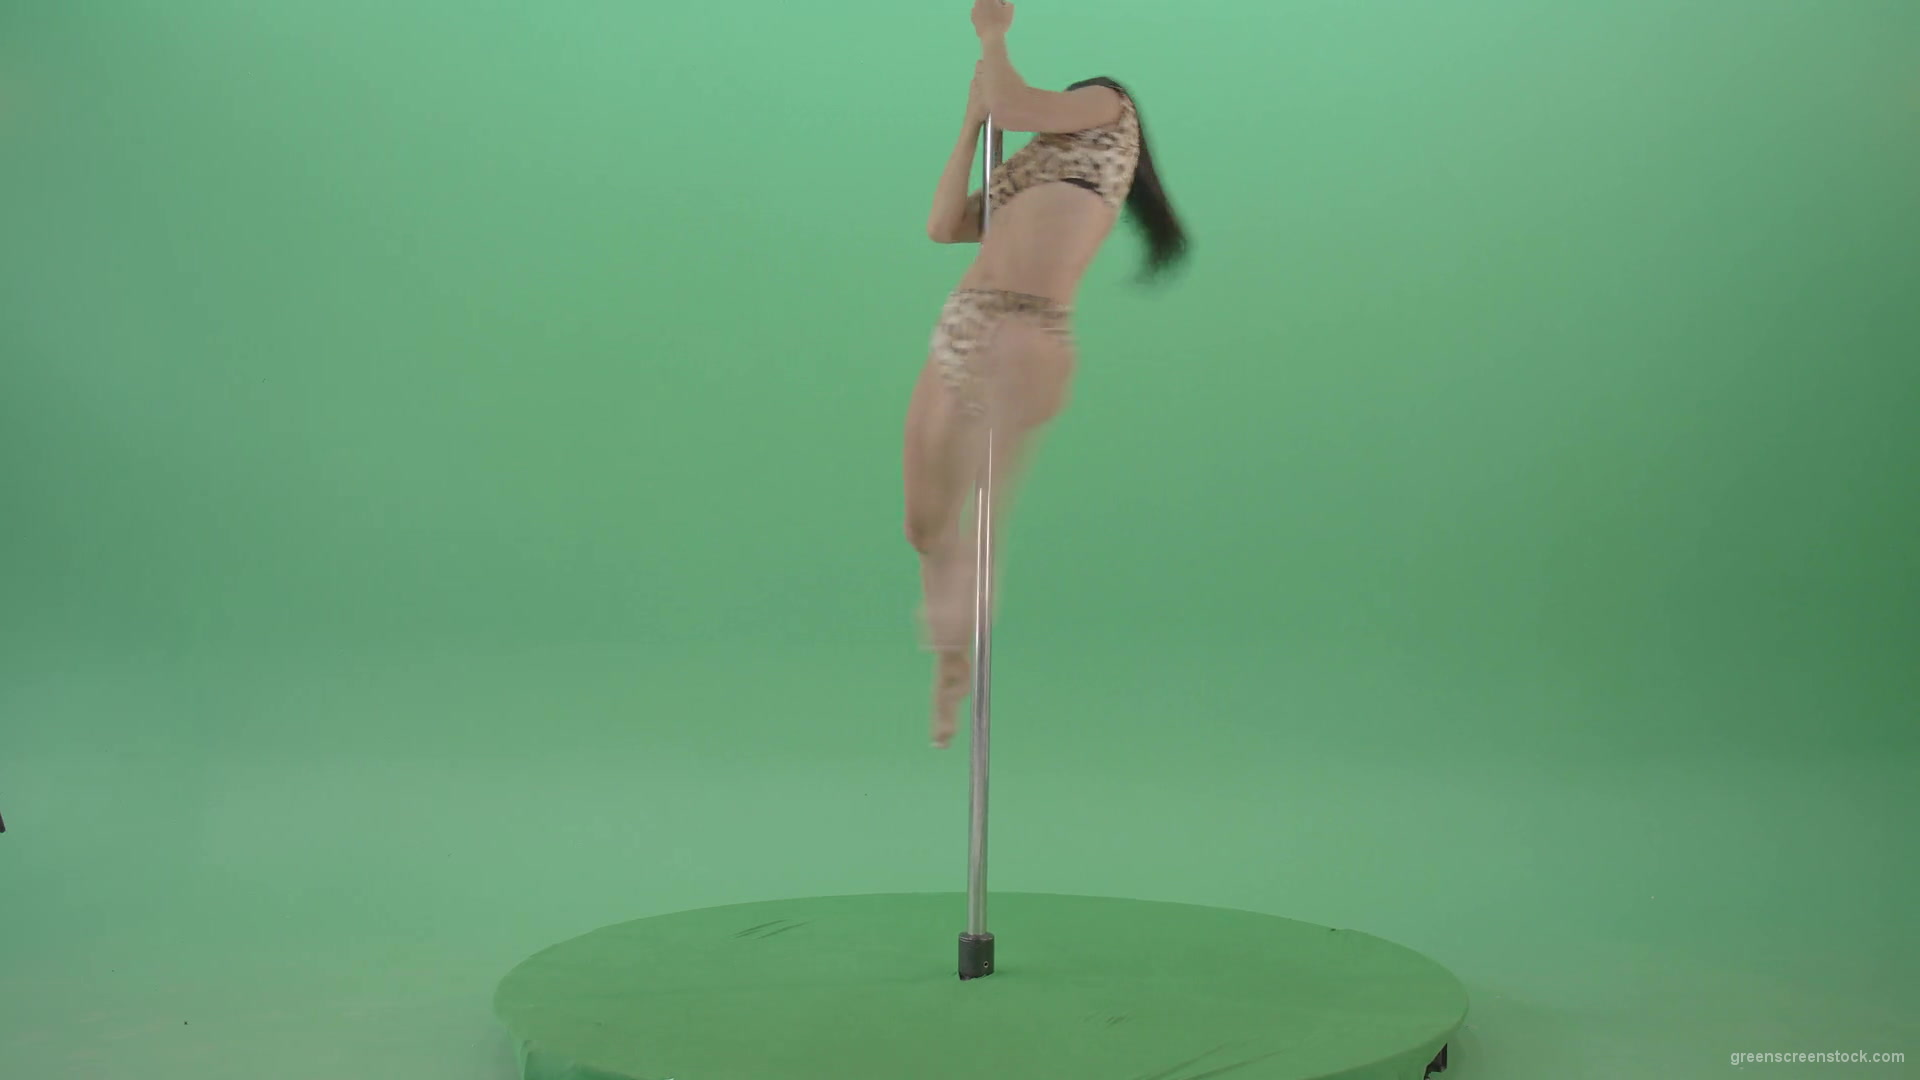 Stripteas-Girl-in-leopard-skin-wear-spinning-on-pilon-dancing-pole-isolated-on-Green-Screen-4K-Video-Footage-1920_005 Green Screen Stock